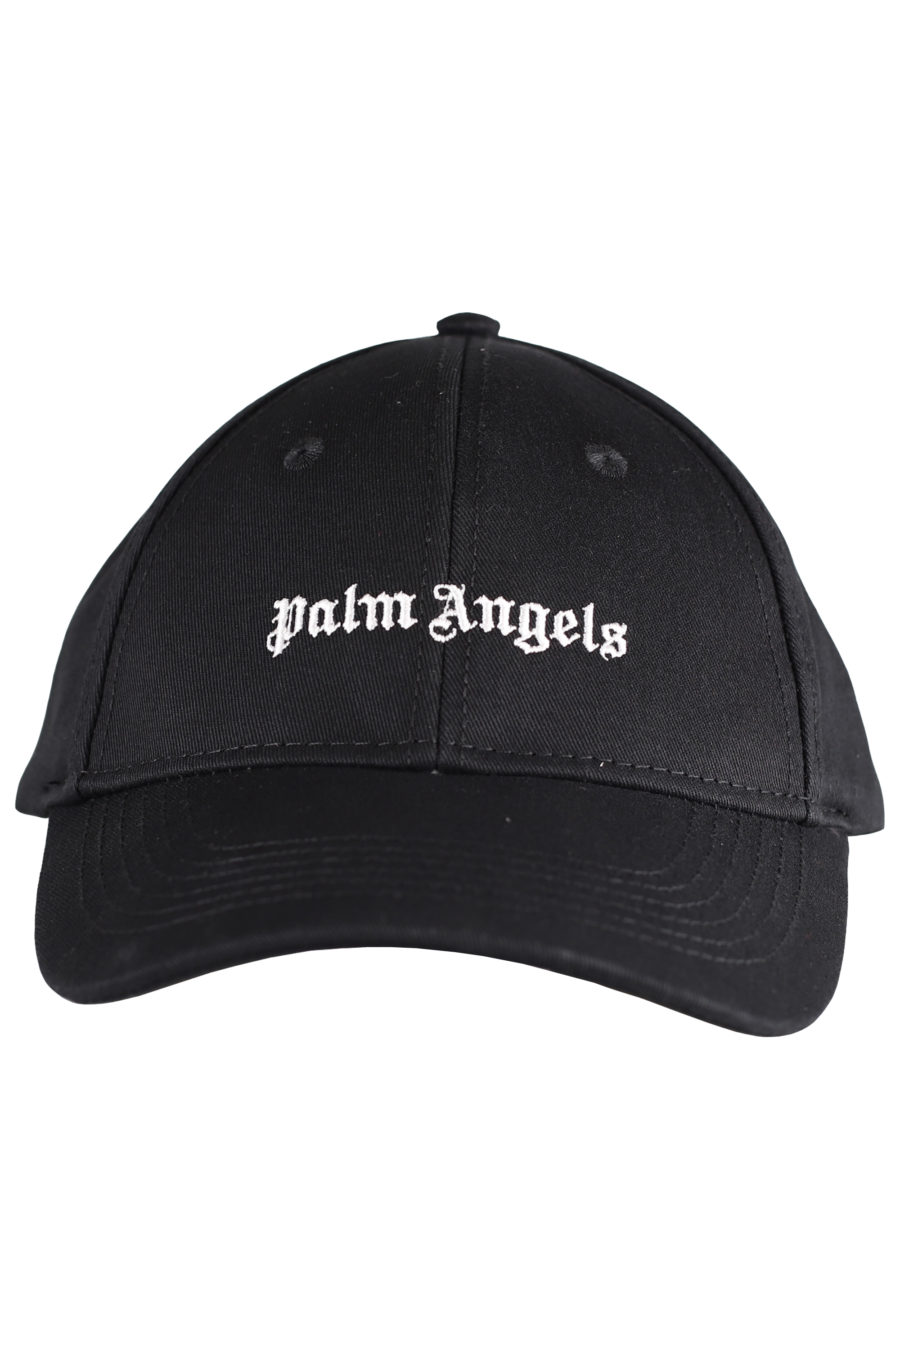 Gorra negra con logo en blanco - IMG 7283